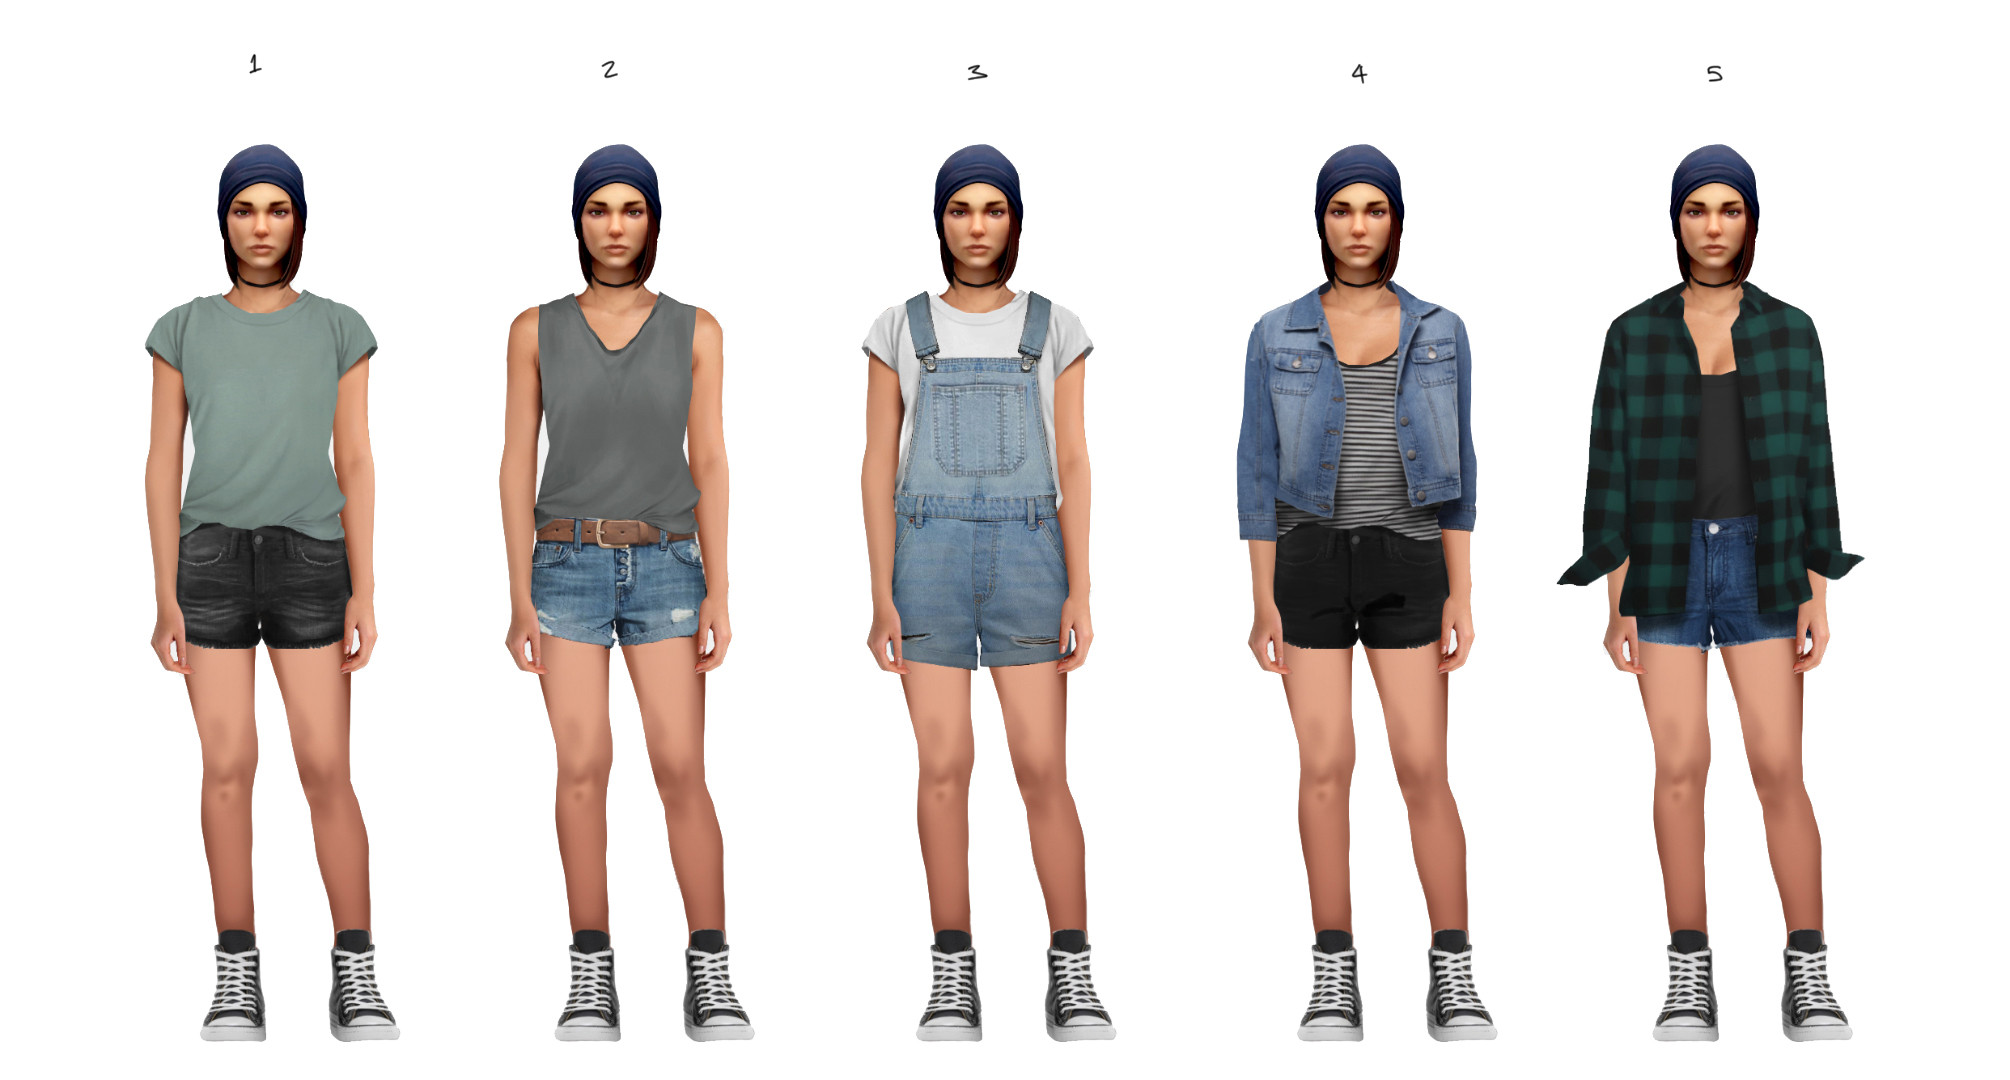 Wavelengths DLC - Summer Outfit Options